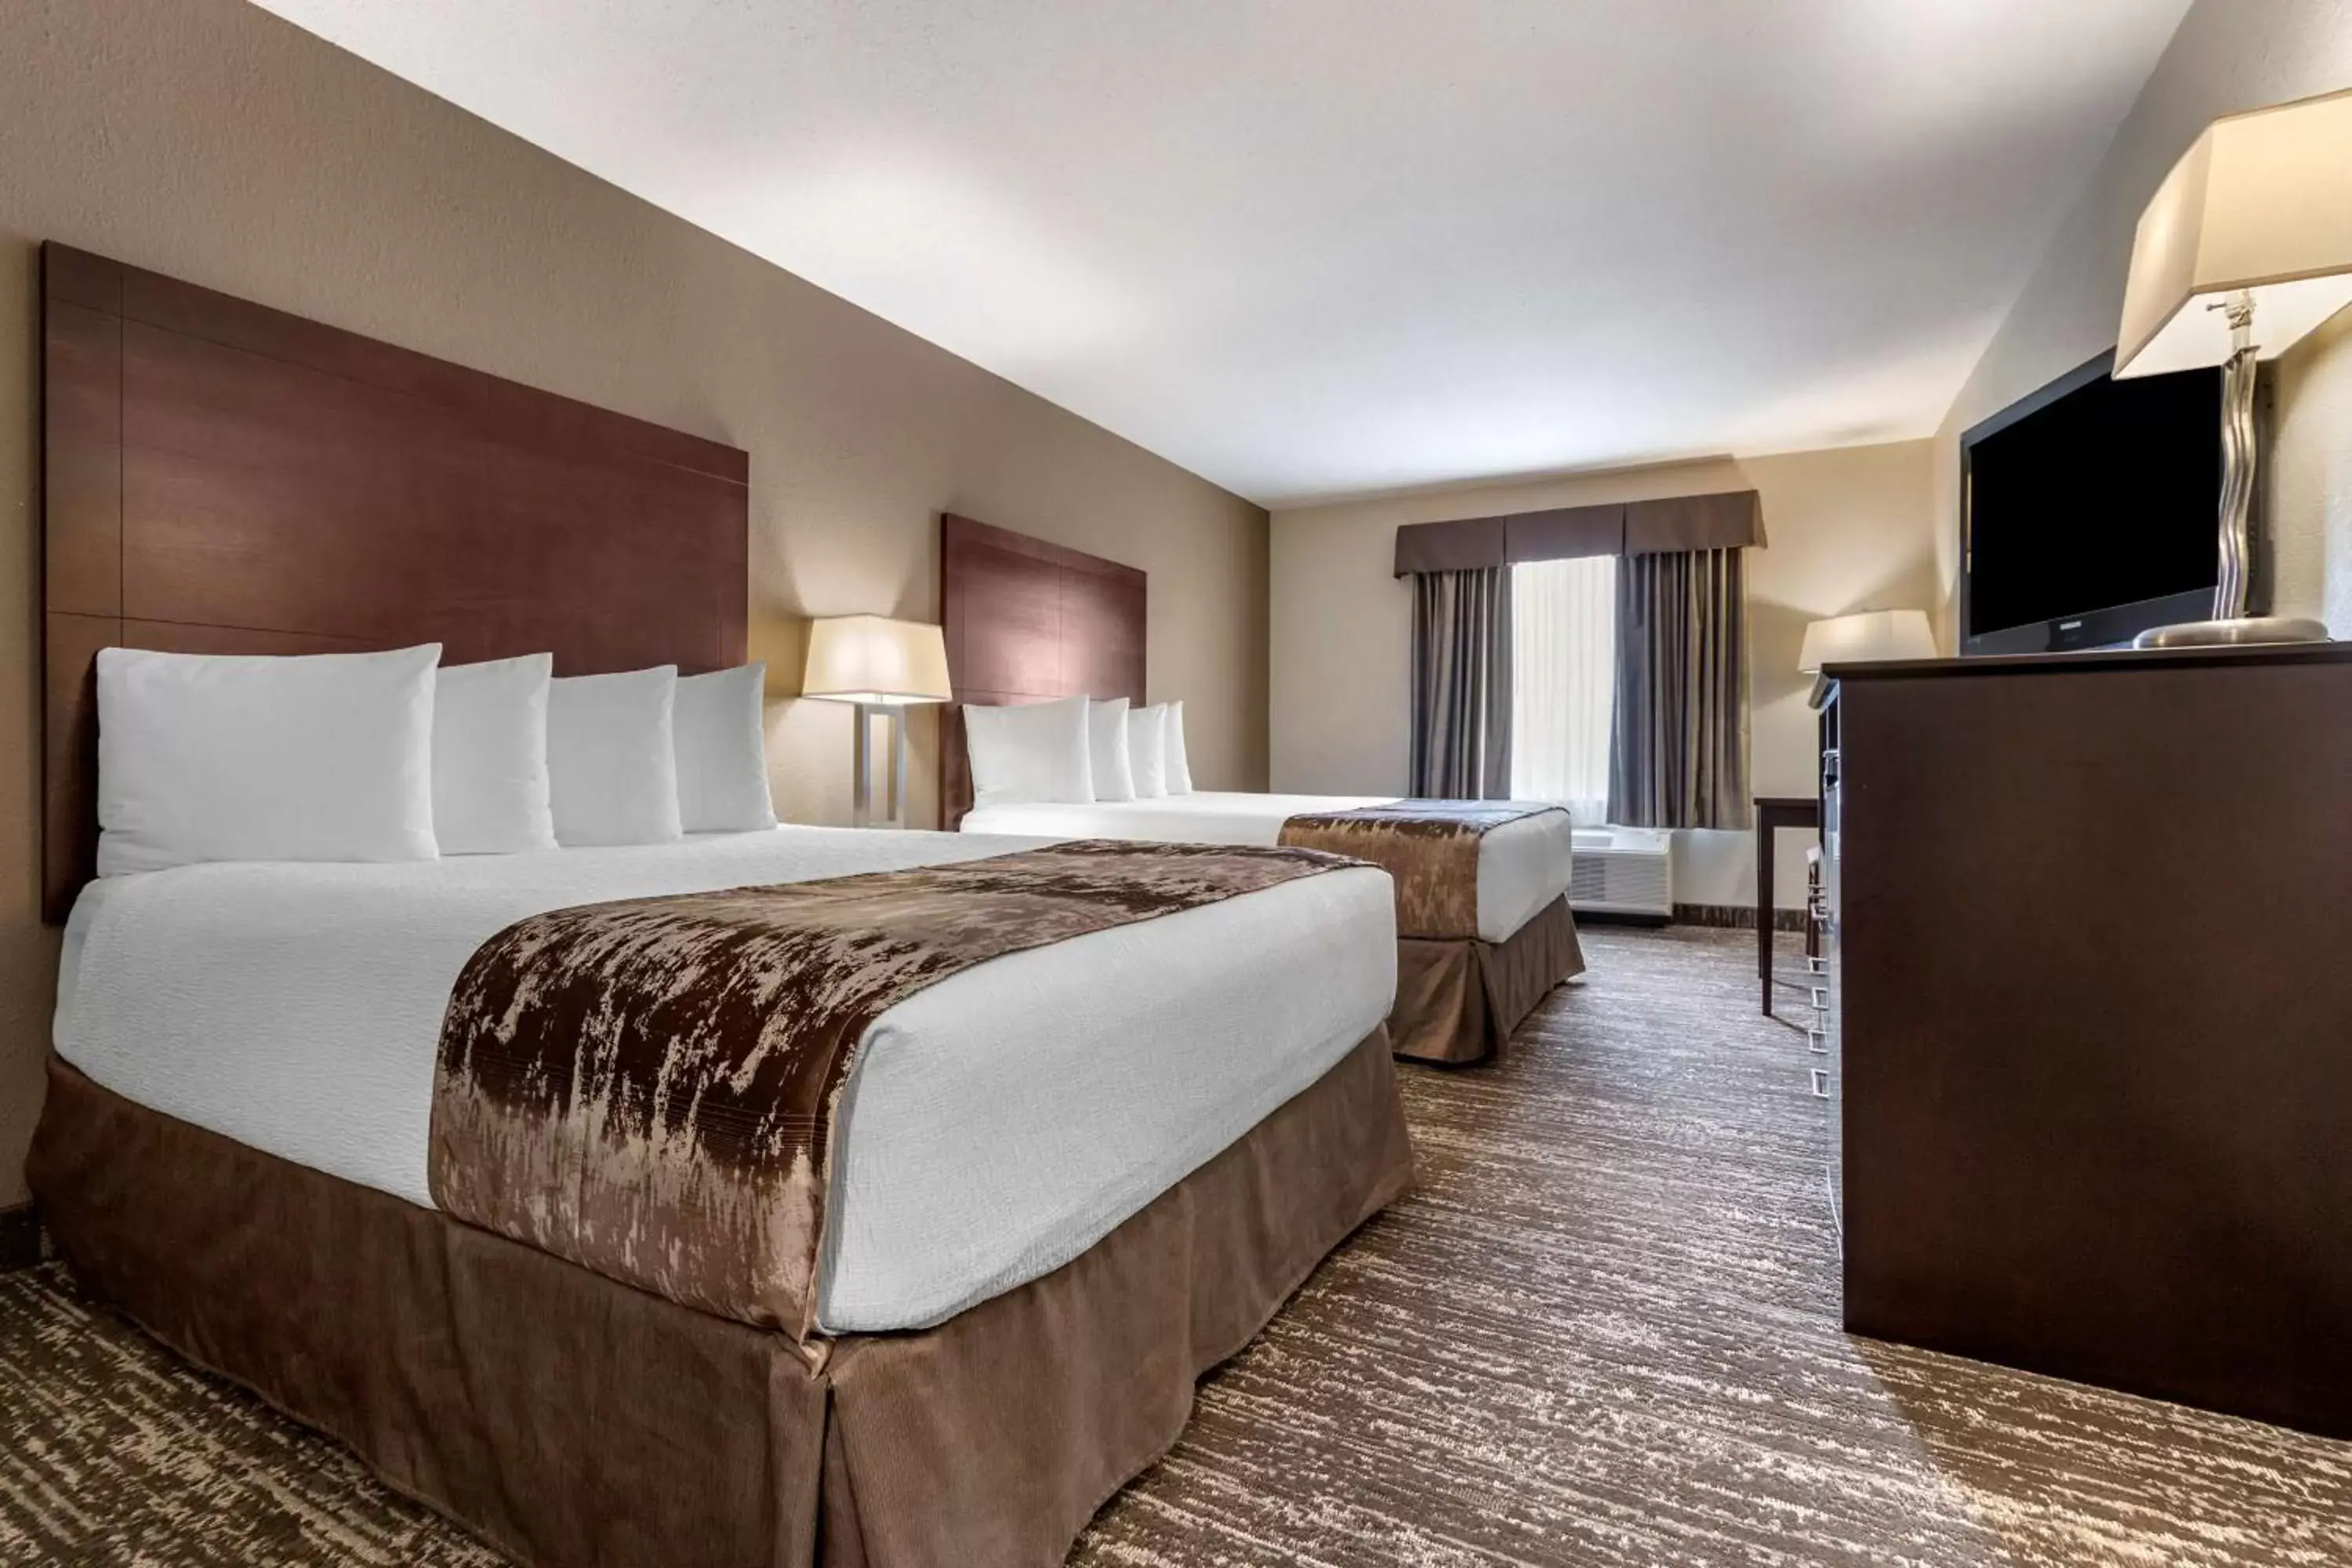 Bedroom, Bed in Best Western Plus Pembina Inn & Suites